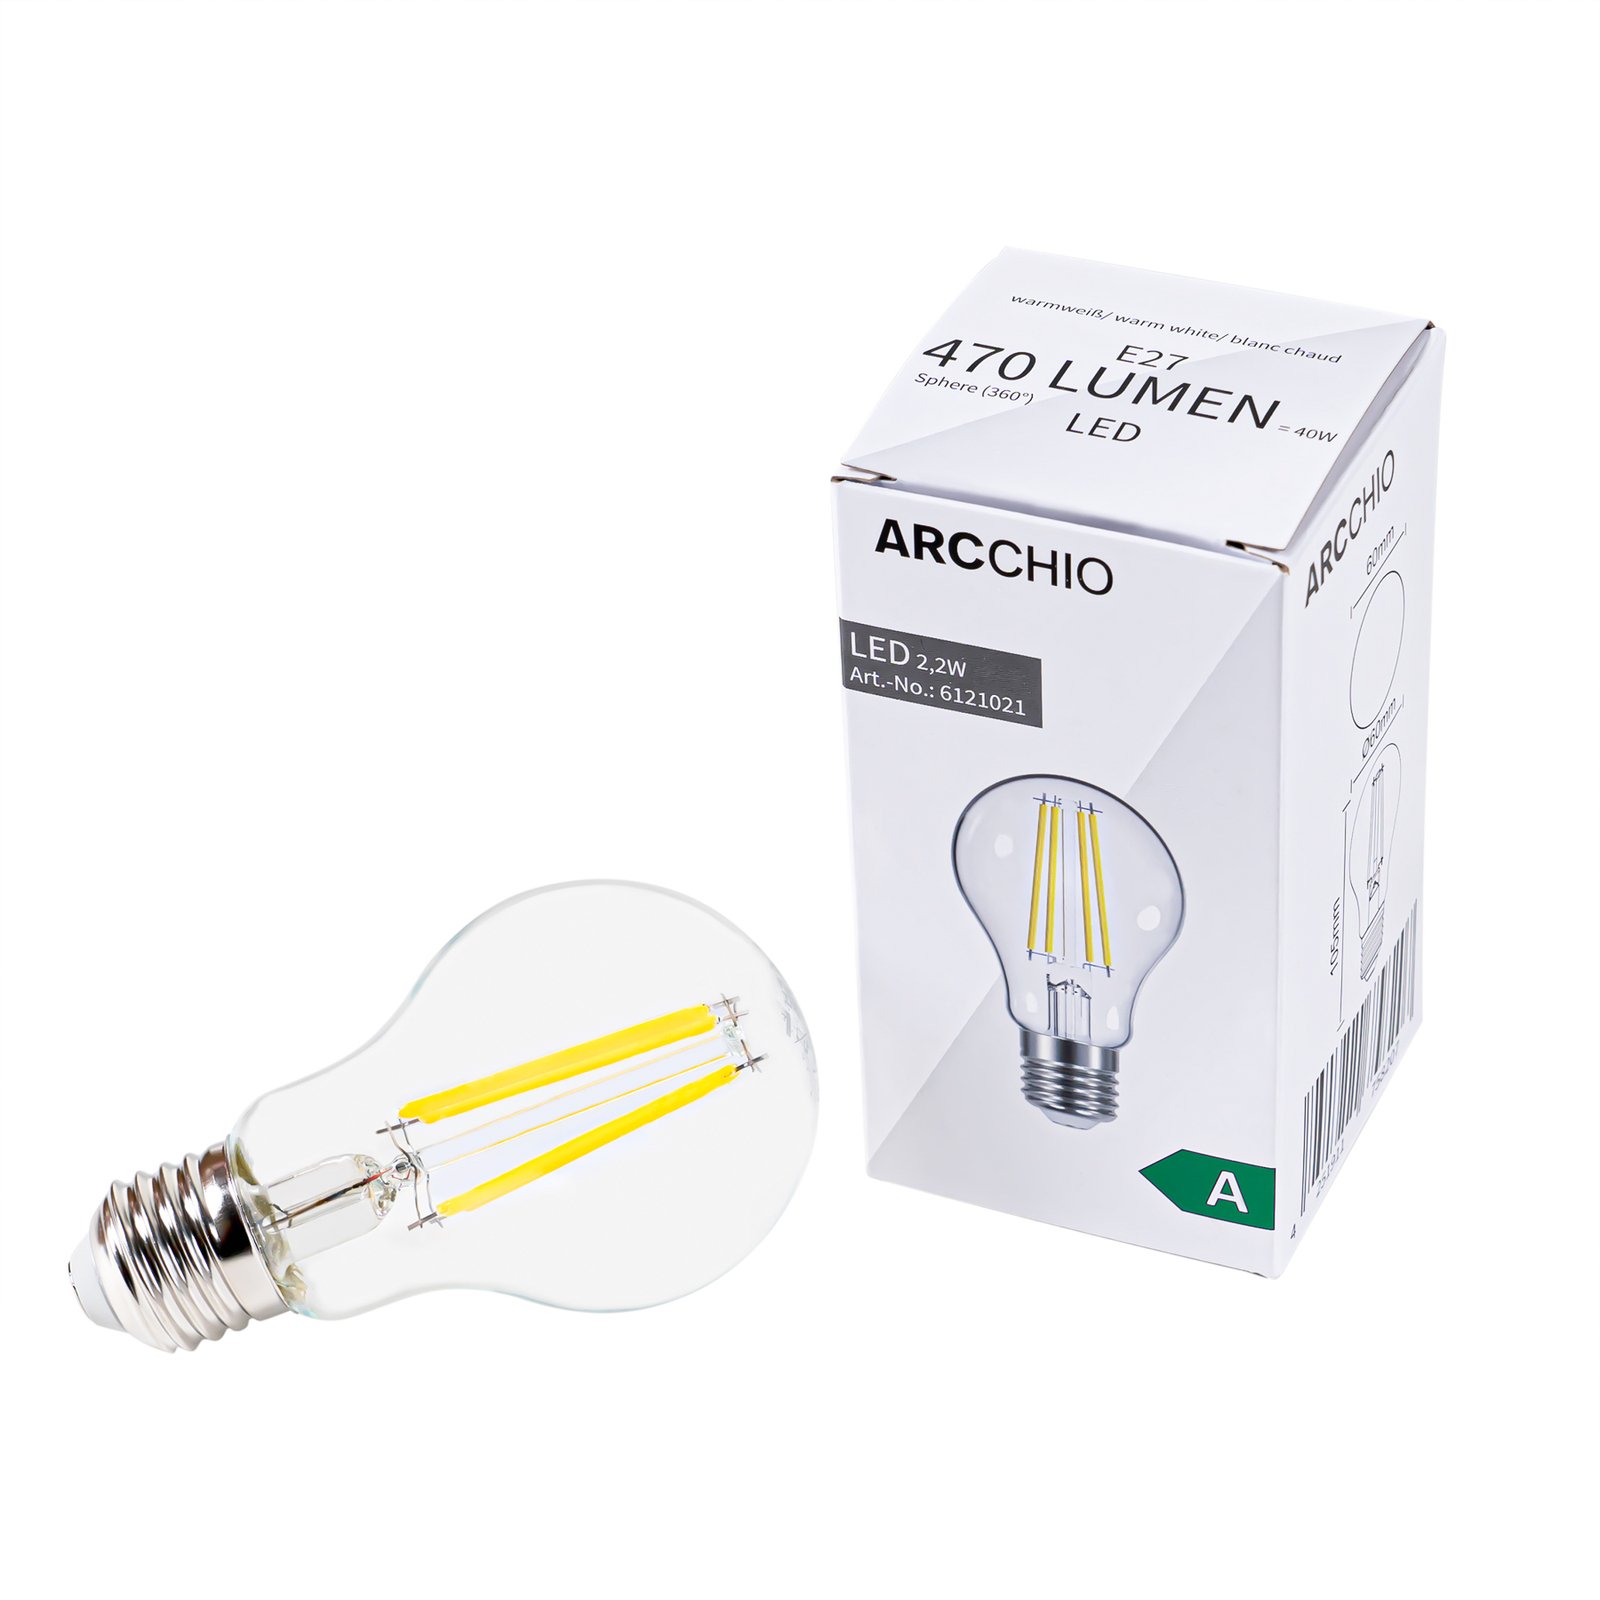 Ampoule filament LED E27 2,2W 2 700K 470lm claire